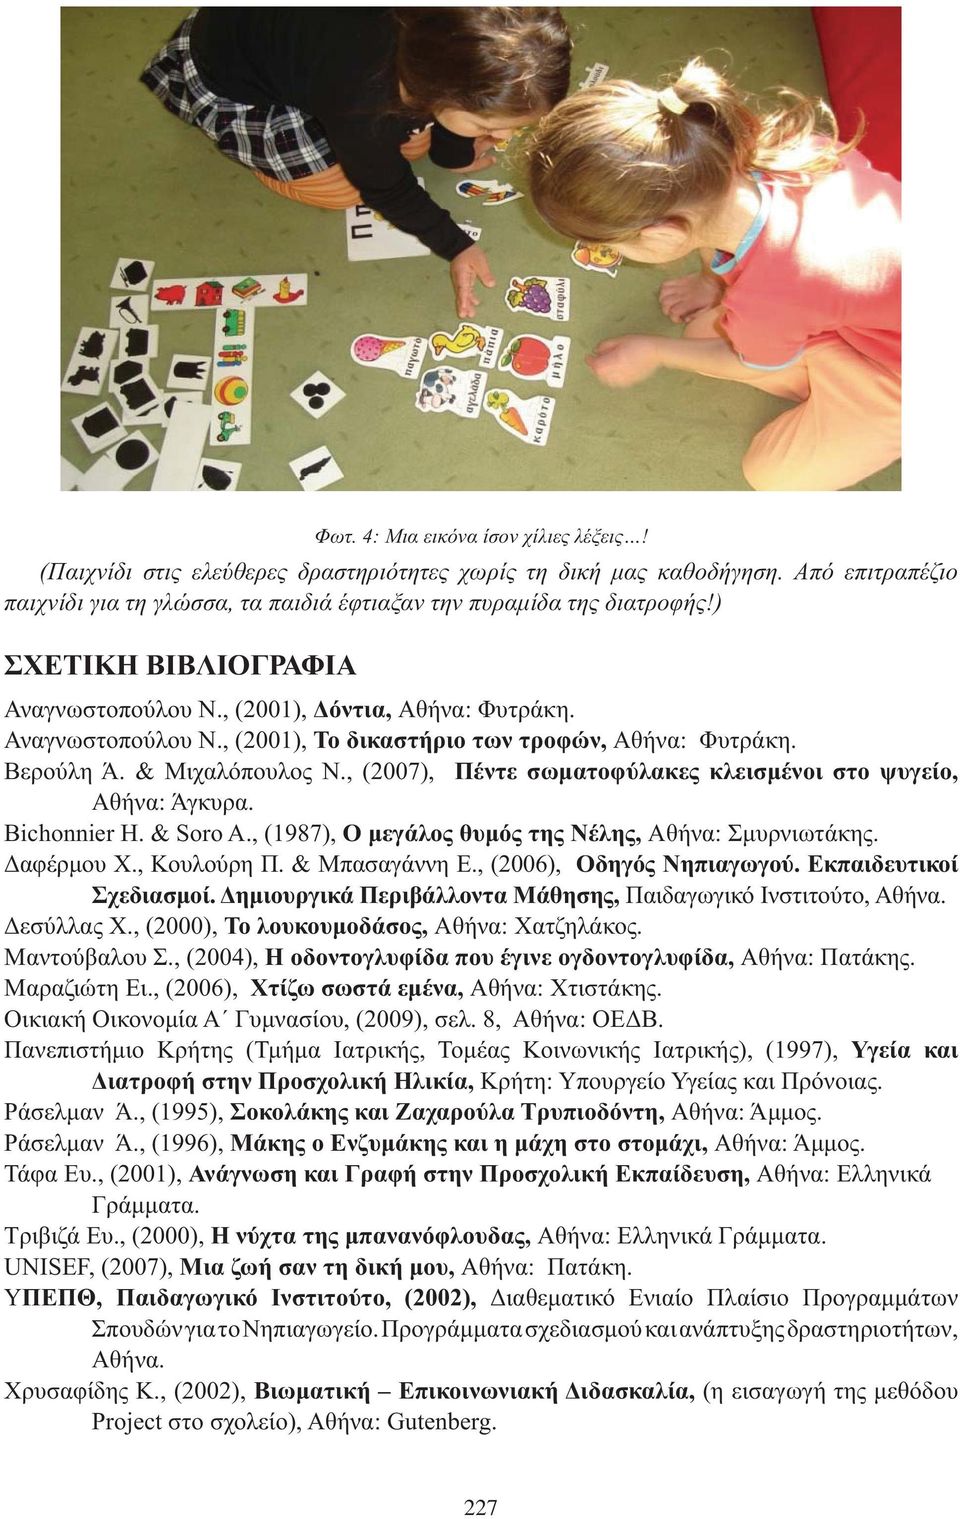 Μαραζιώτη Ει., (2006),, Αθήνα: Χτιστάκης. Οικιακή Οικονομία Α Γυμνασίου, (2009), σελ. 8, Αθήνα: ΟΕΔΒ.